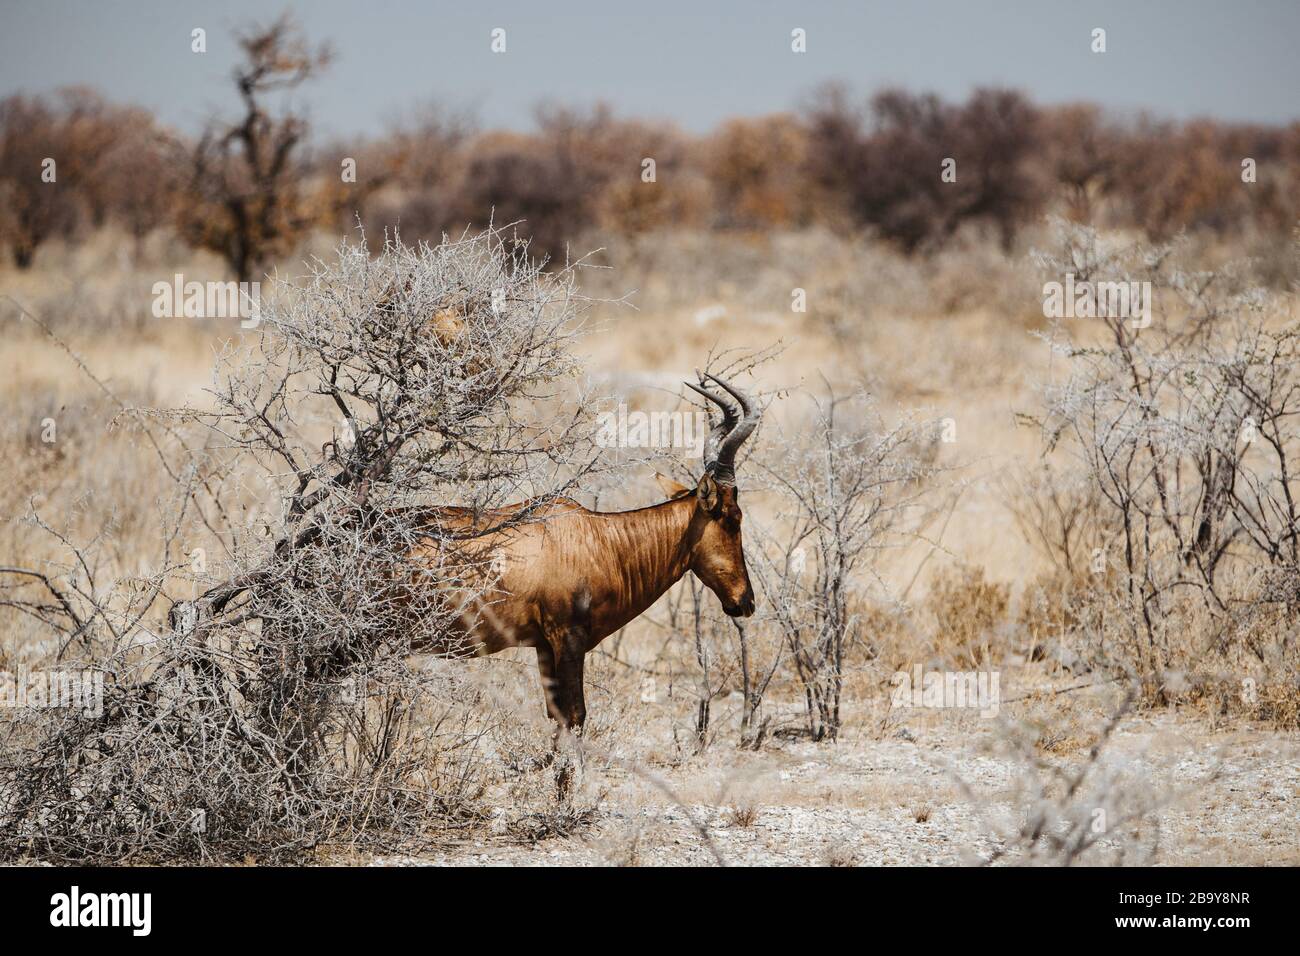 Gemeines Land, Eland-Antilope, Taurotragus oryx, Stier in Wüste und wilden Pflanzen Stockfoto